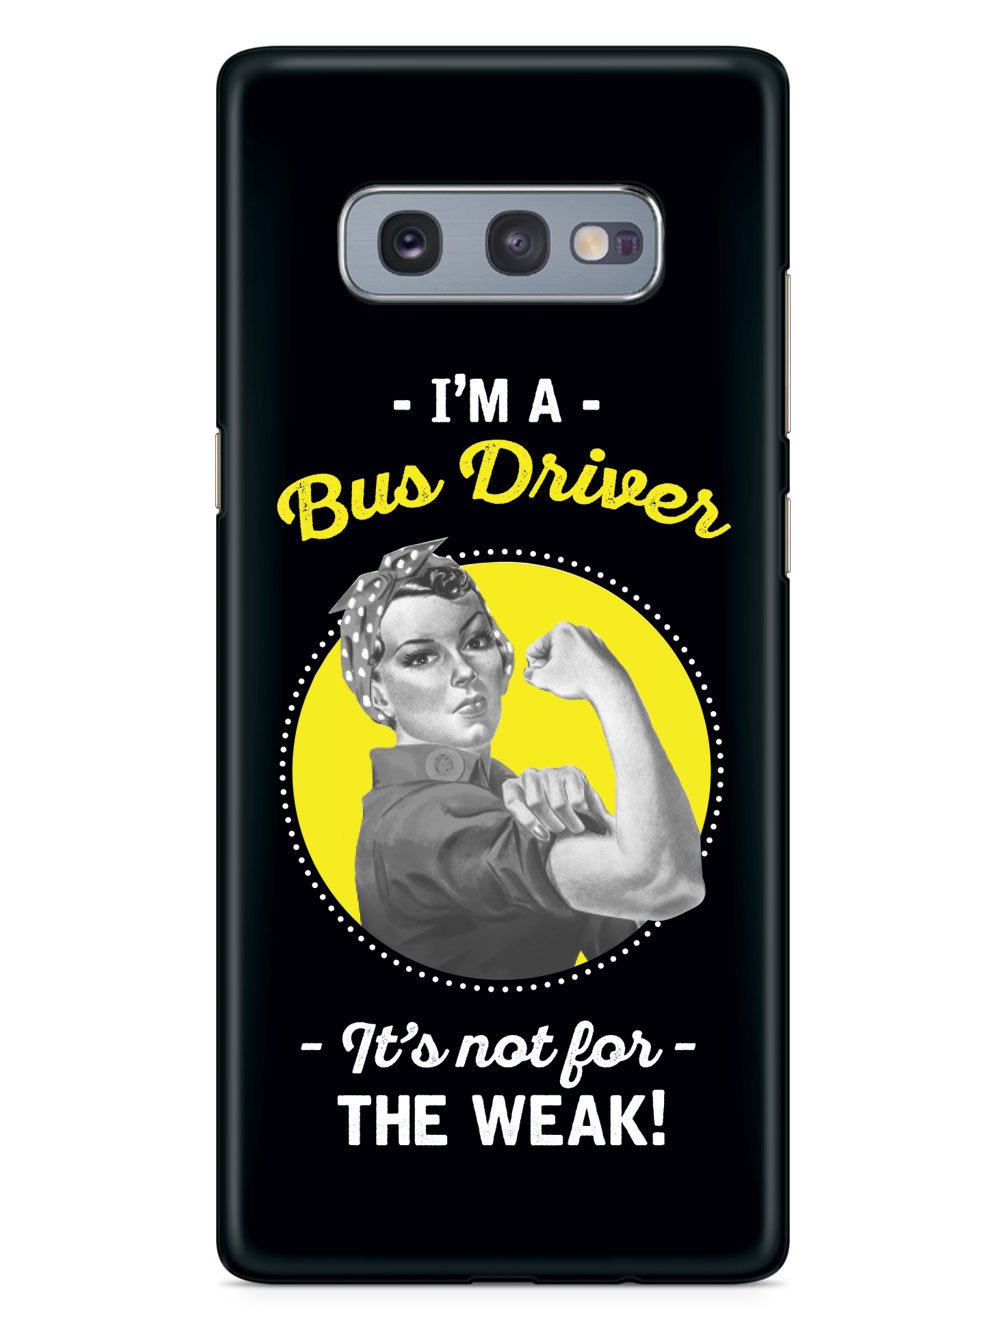 I'm a Bus Driver! Case